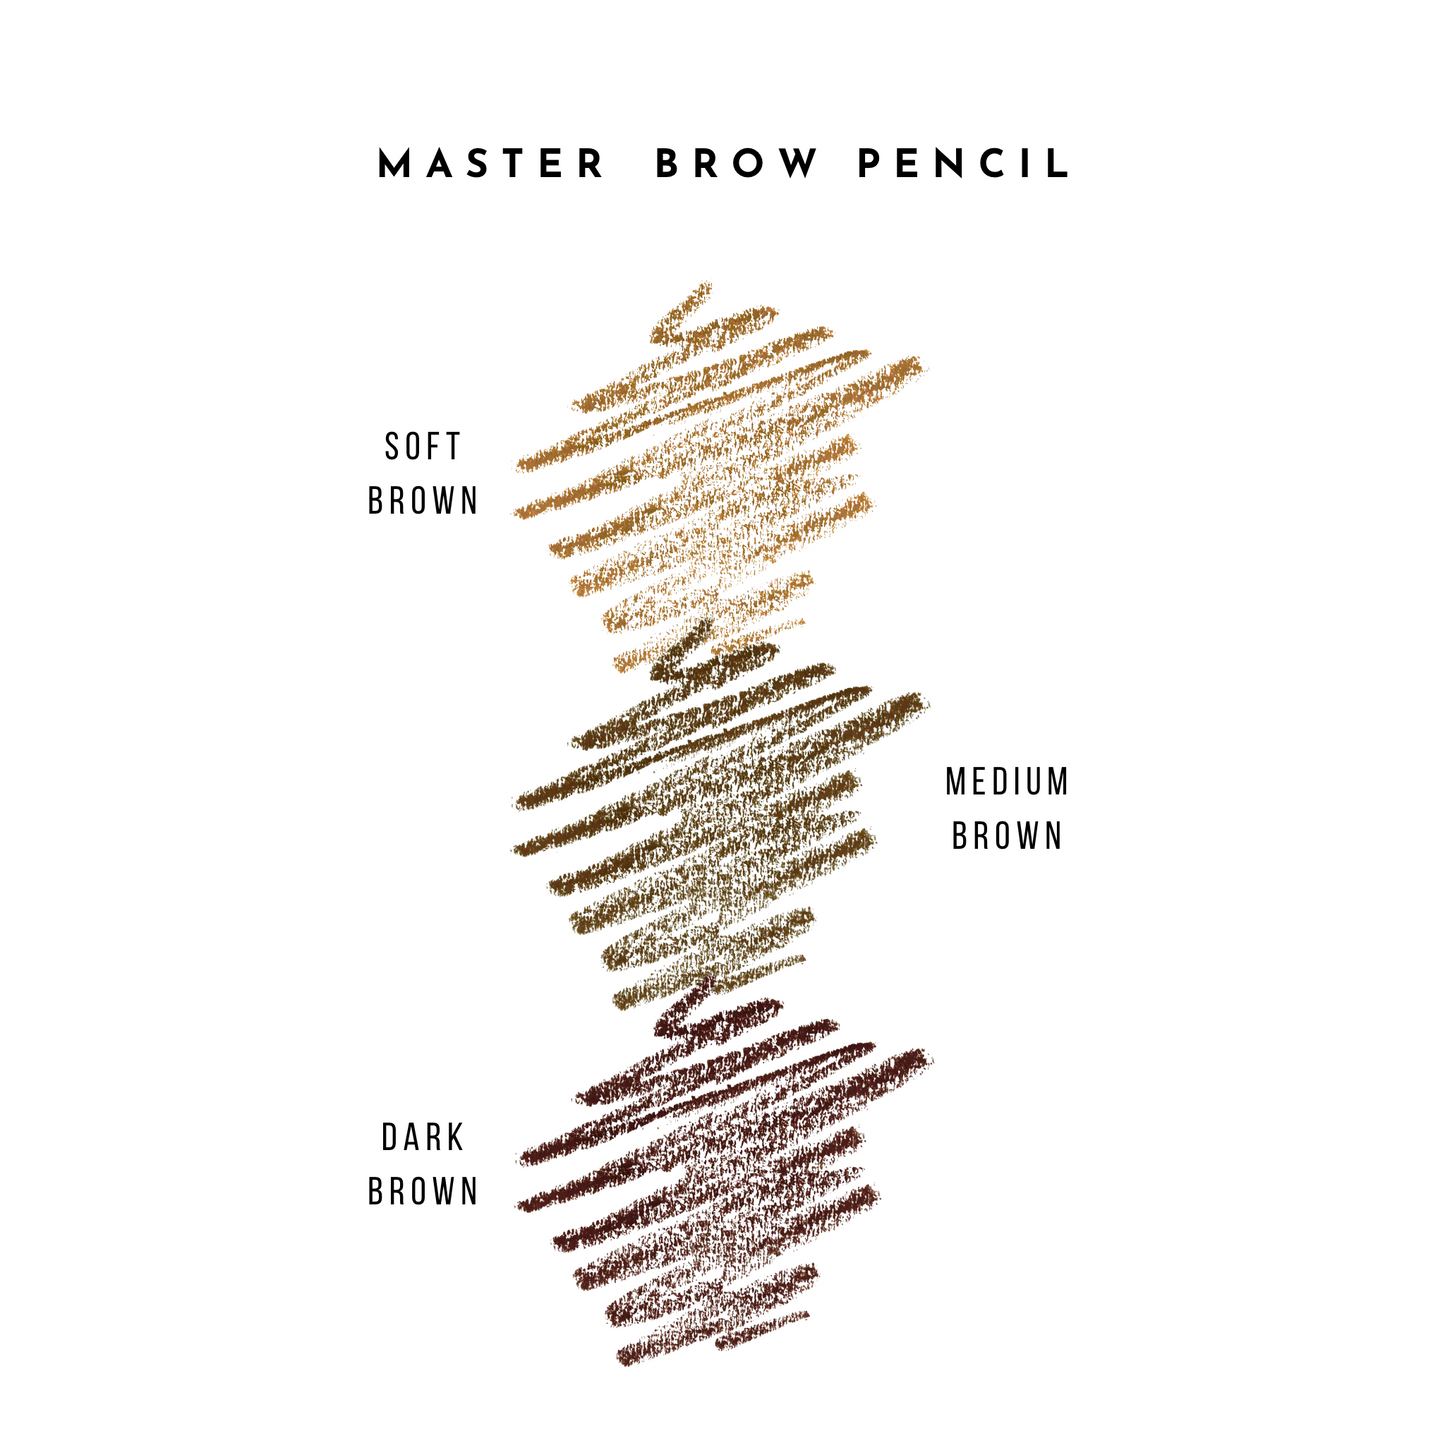 Master Brow Pencil